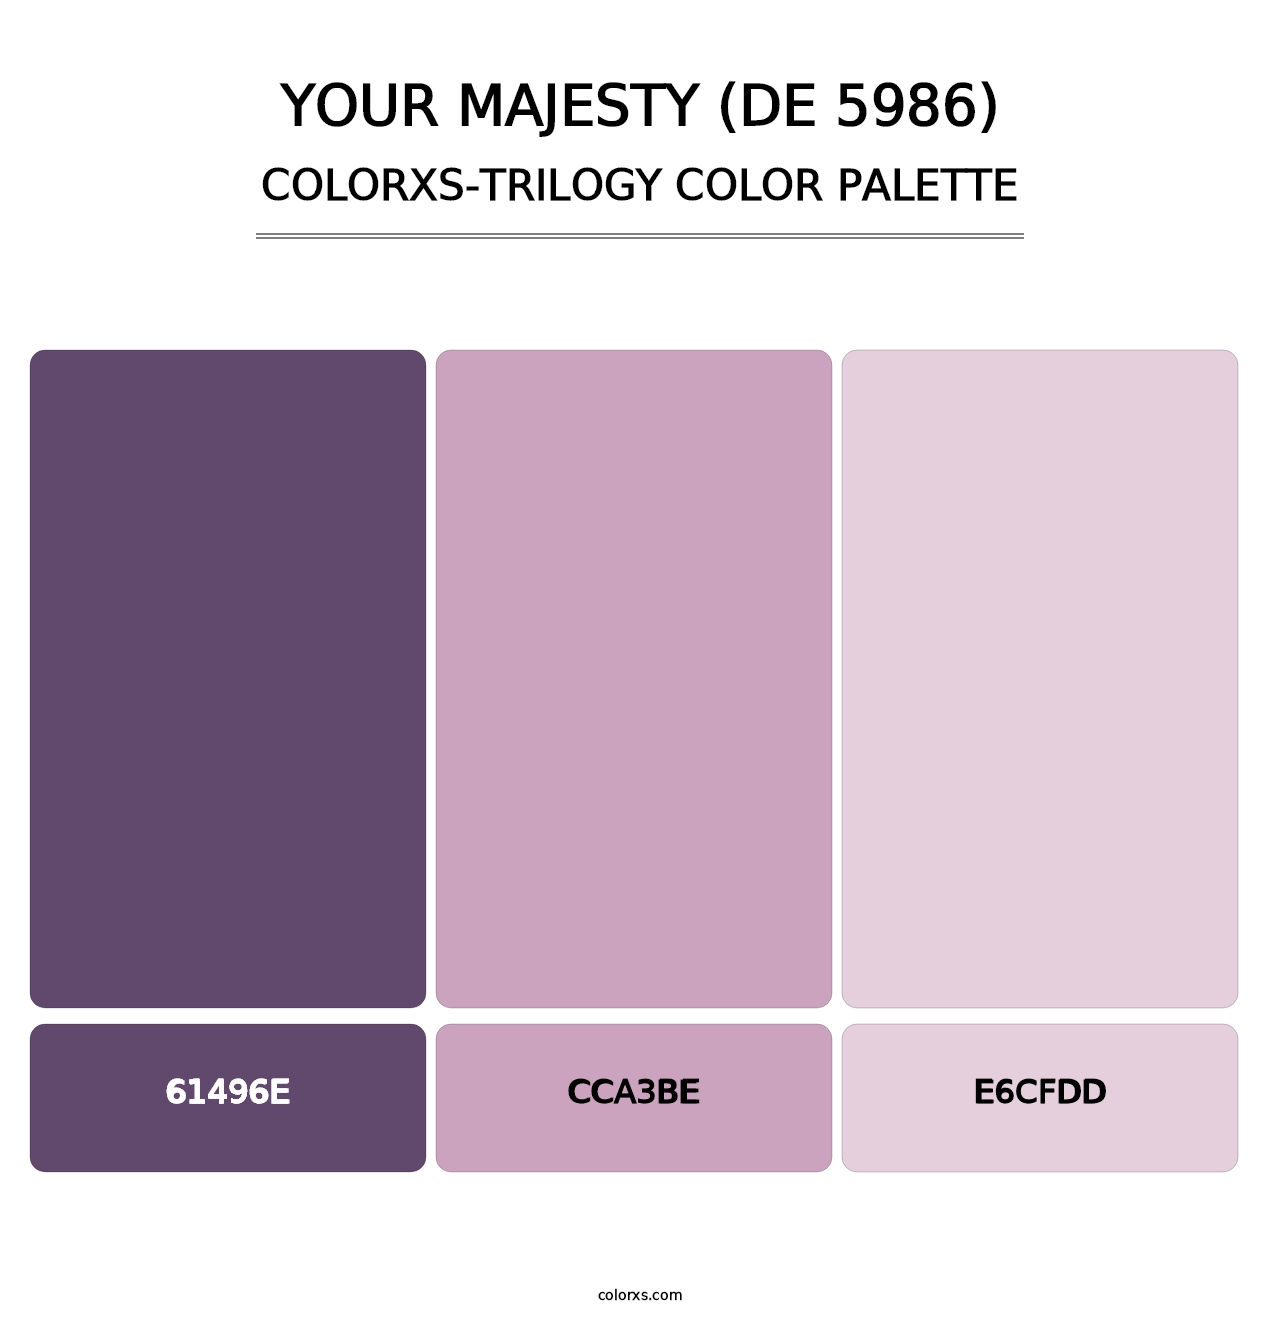 Your Majesty (DE 5986) - Colorxs Trilogy Palette